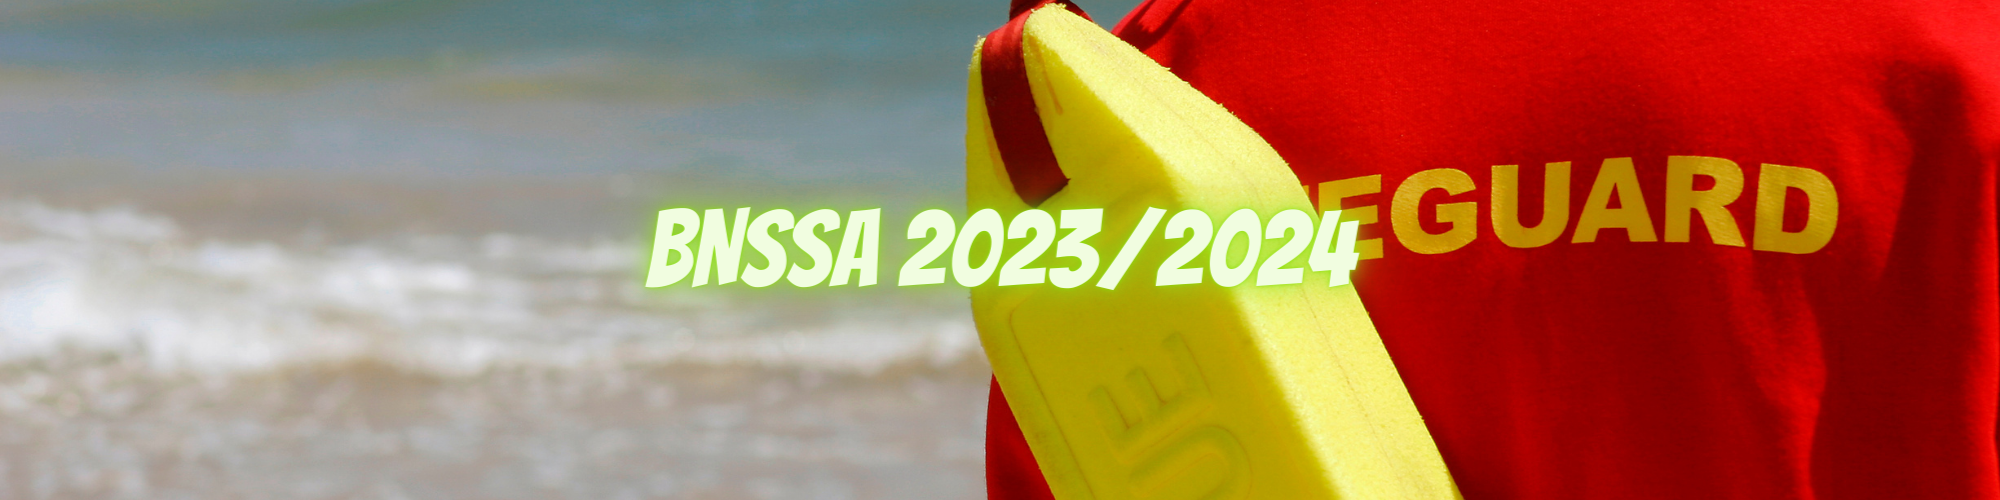 FORMATION BNSSA 2023-2024